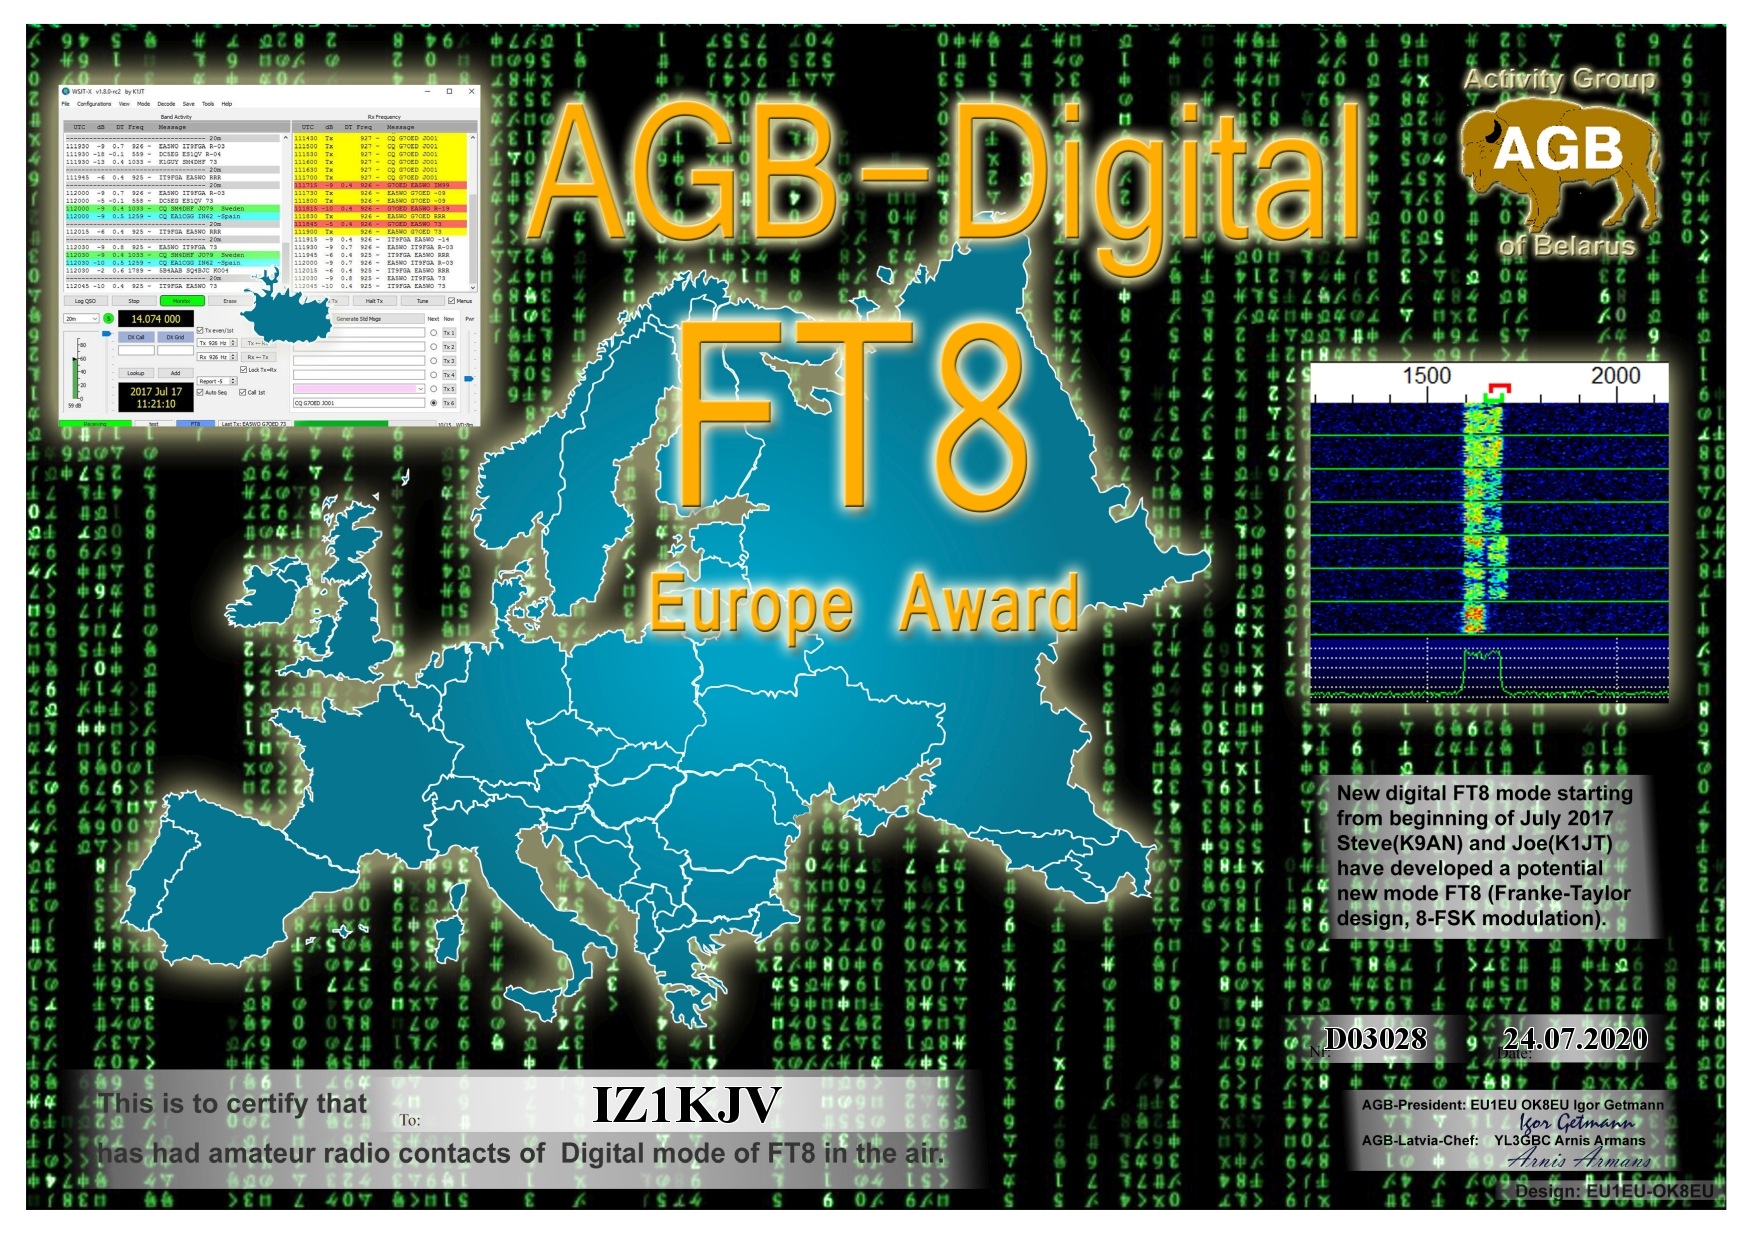 IZ1KJV-FT8_EUROPE-BASIC_AGB